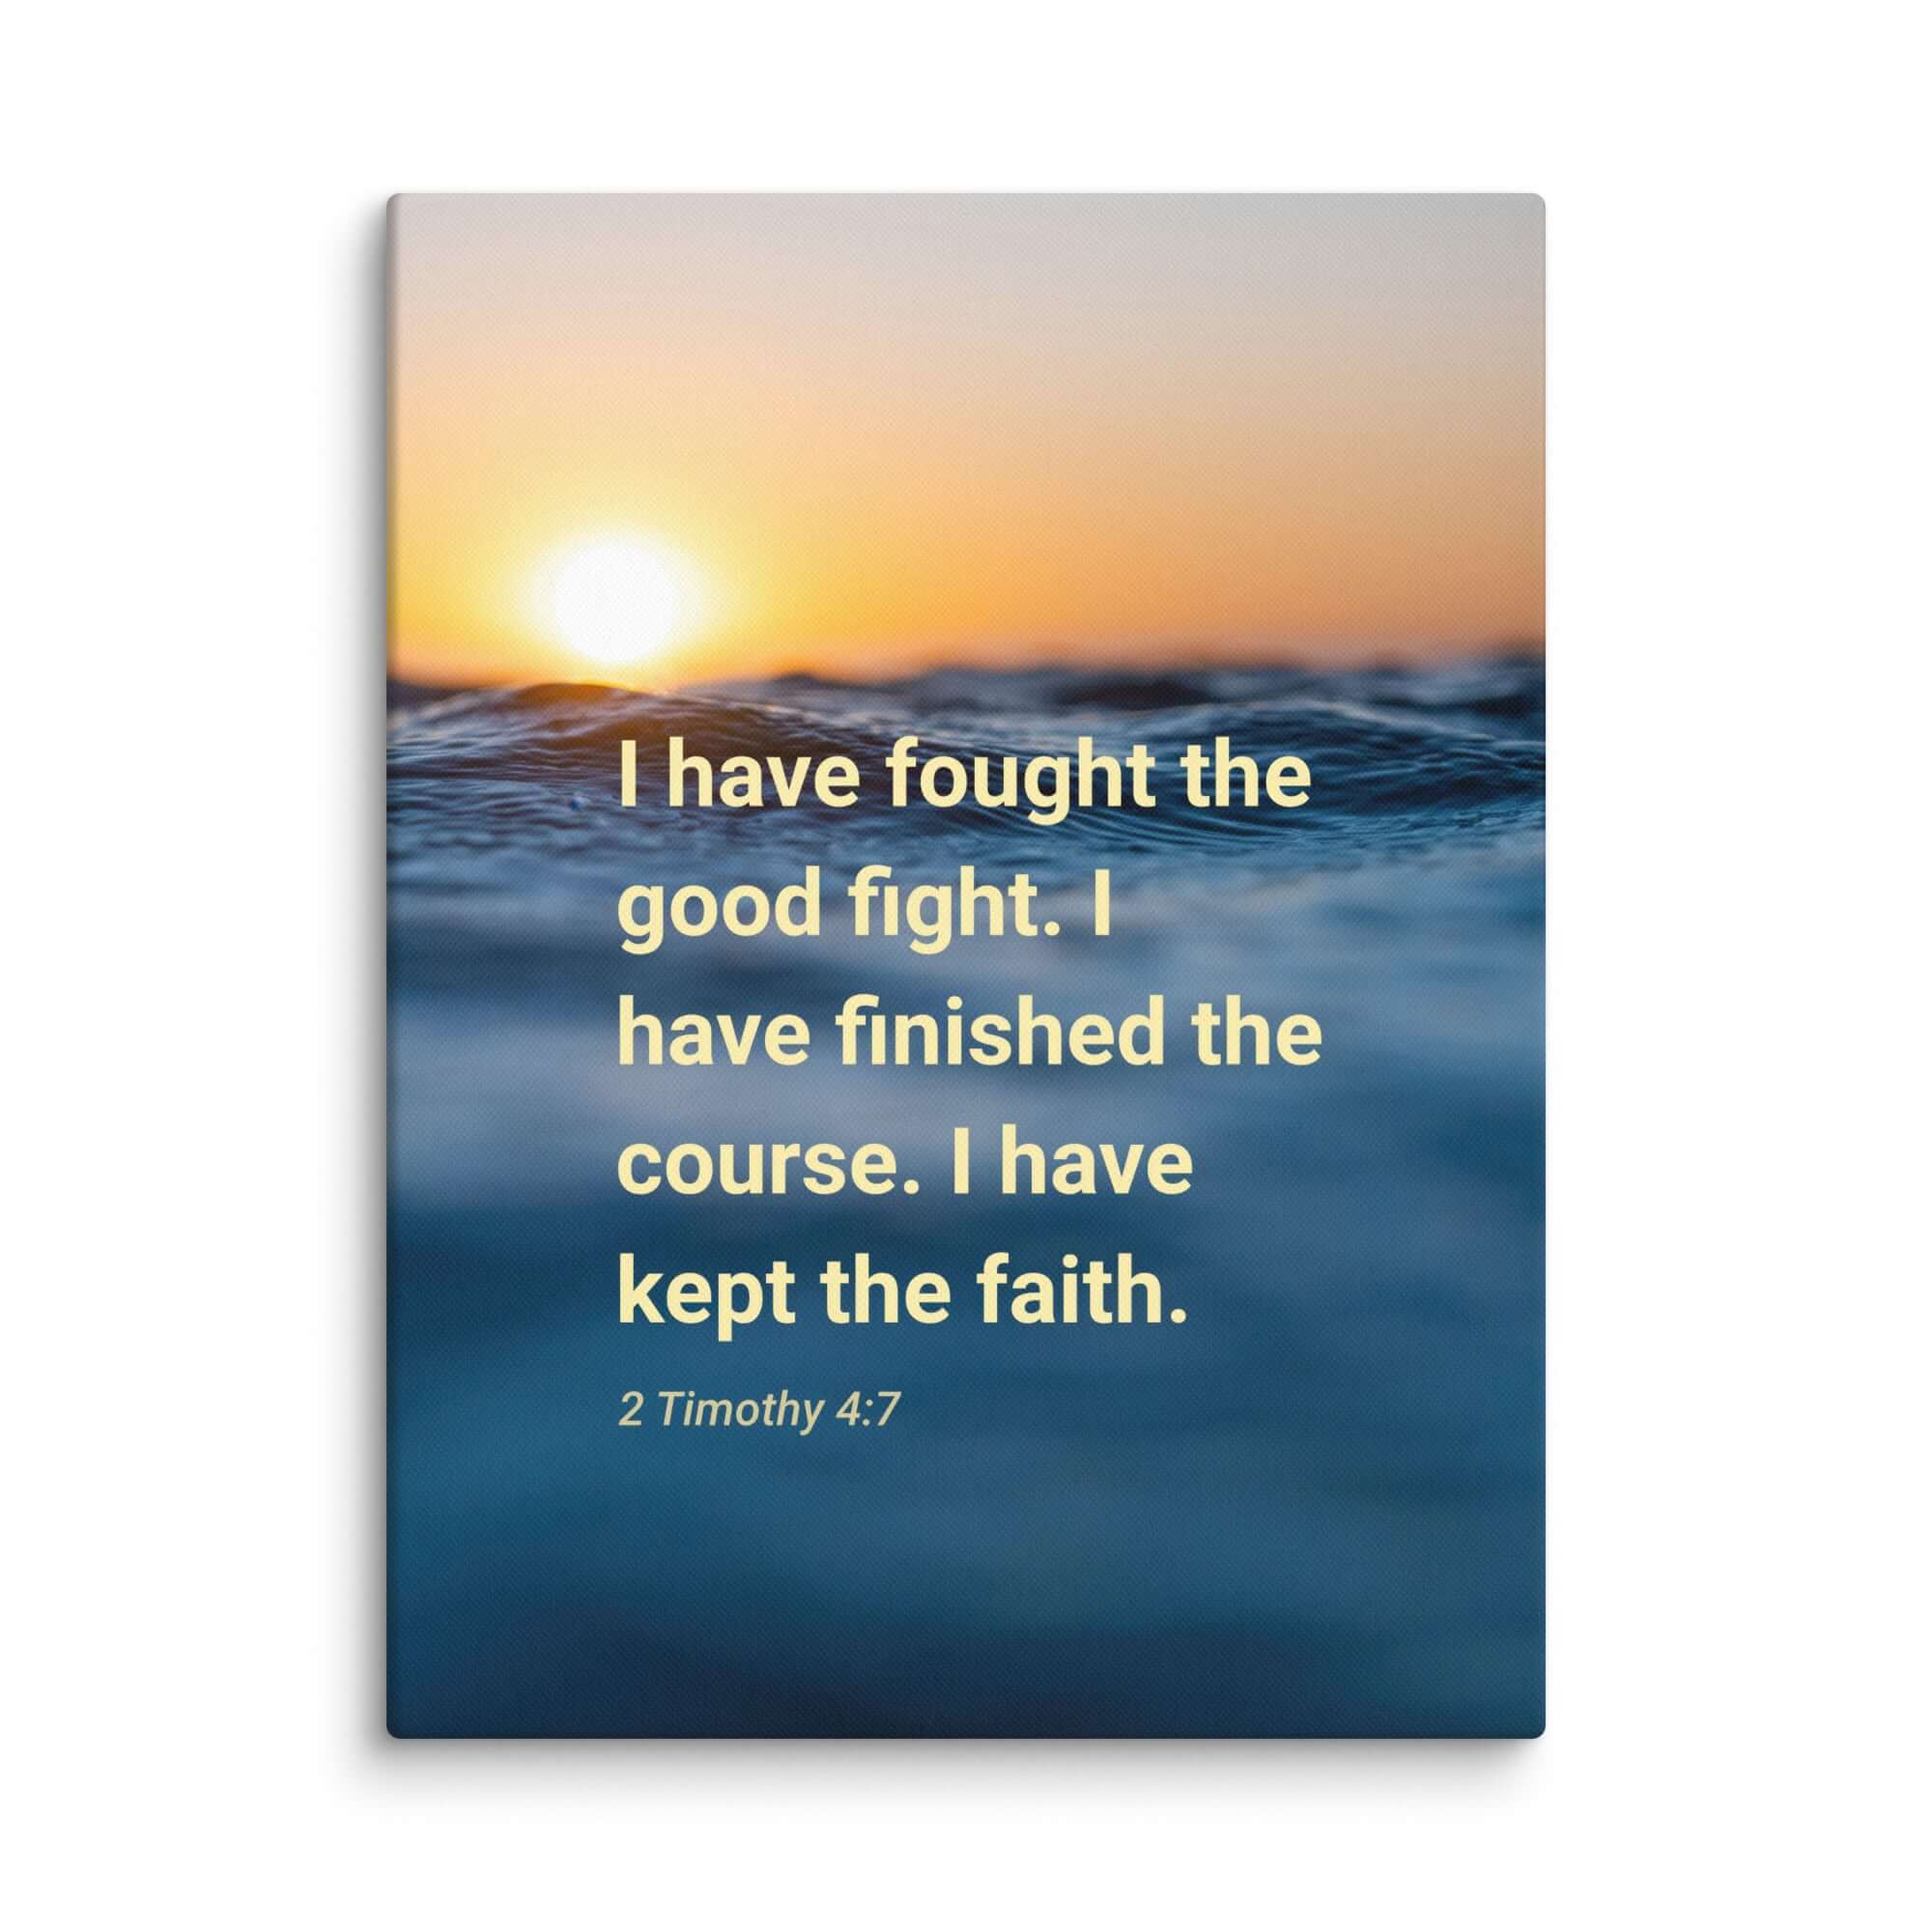 2 Tim 4:7 - Bible Verse, kept the faith Canvas